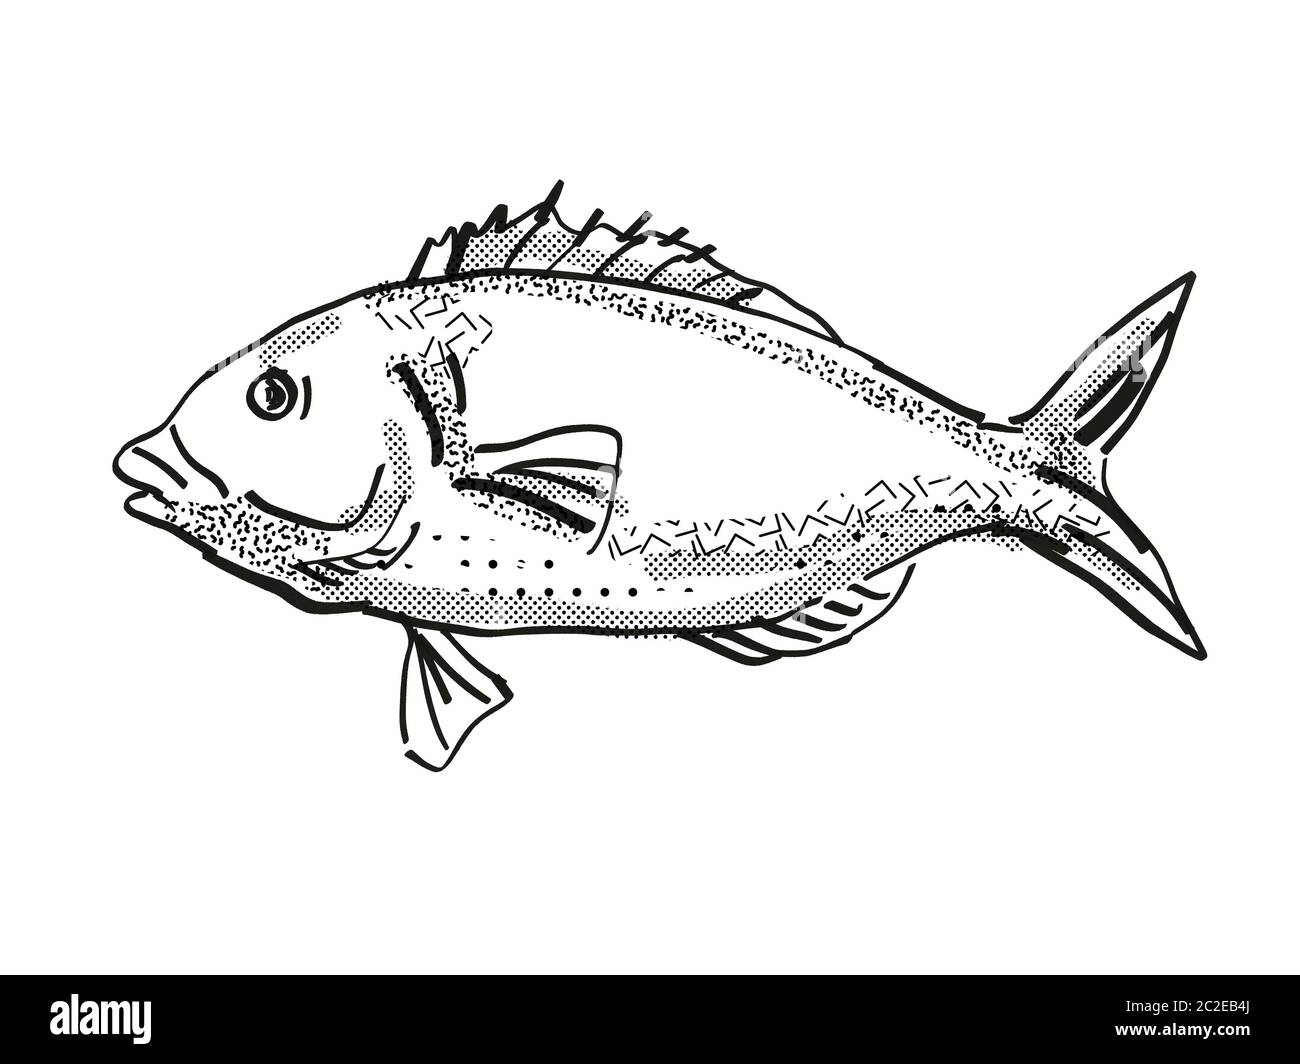 Retro cartoon style dessin d'une tarakihi, originaire de la Nouvelle-Zélande la vie marine vu de côté des espèces isolées sur fond blanc en noir et blanc Banque D'Images